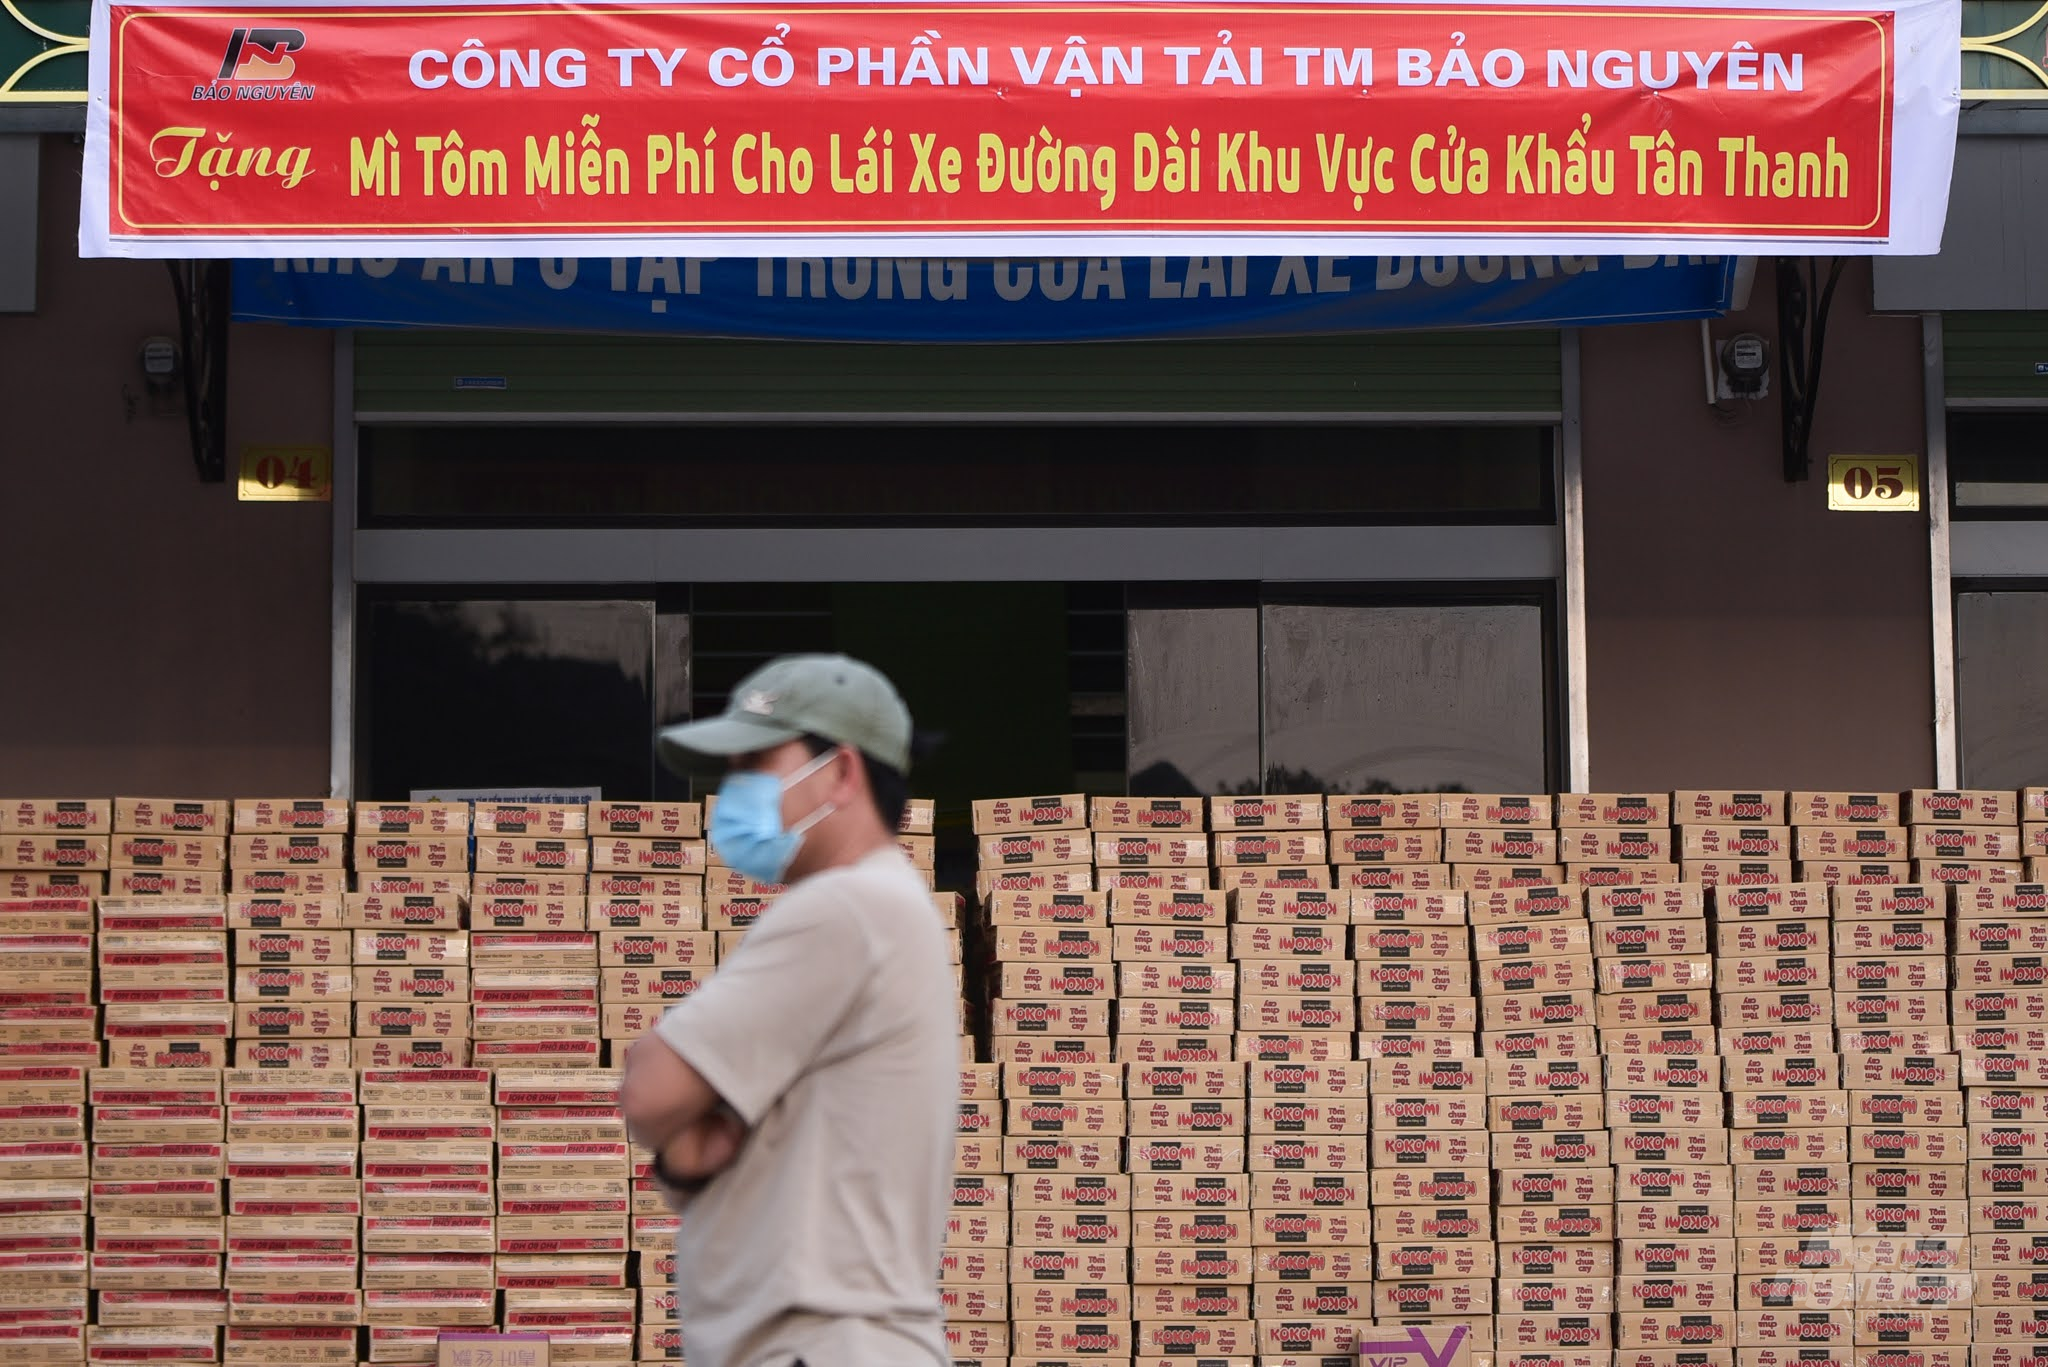 Ngày 23/12, Công ty CP vận tải thương mại Bảo Nguyên, đơn vị quản lý Bến xe Tân Thanh tổ chức trao 1.000 thùng mỳ tôm cho tài xế đường dài đang bị mắc kẹt tại khu vực cửa khẩu.